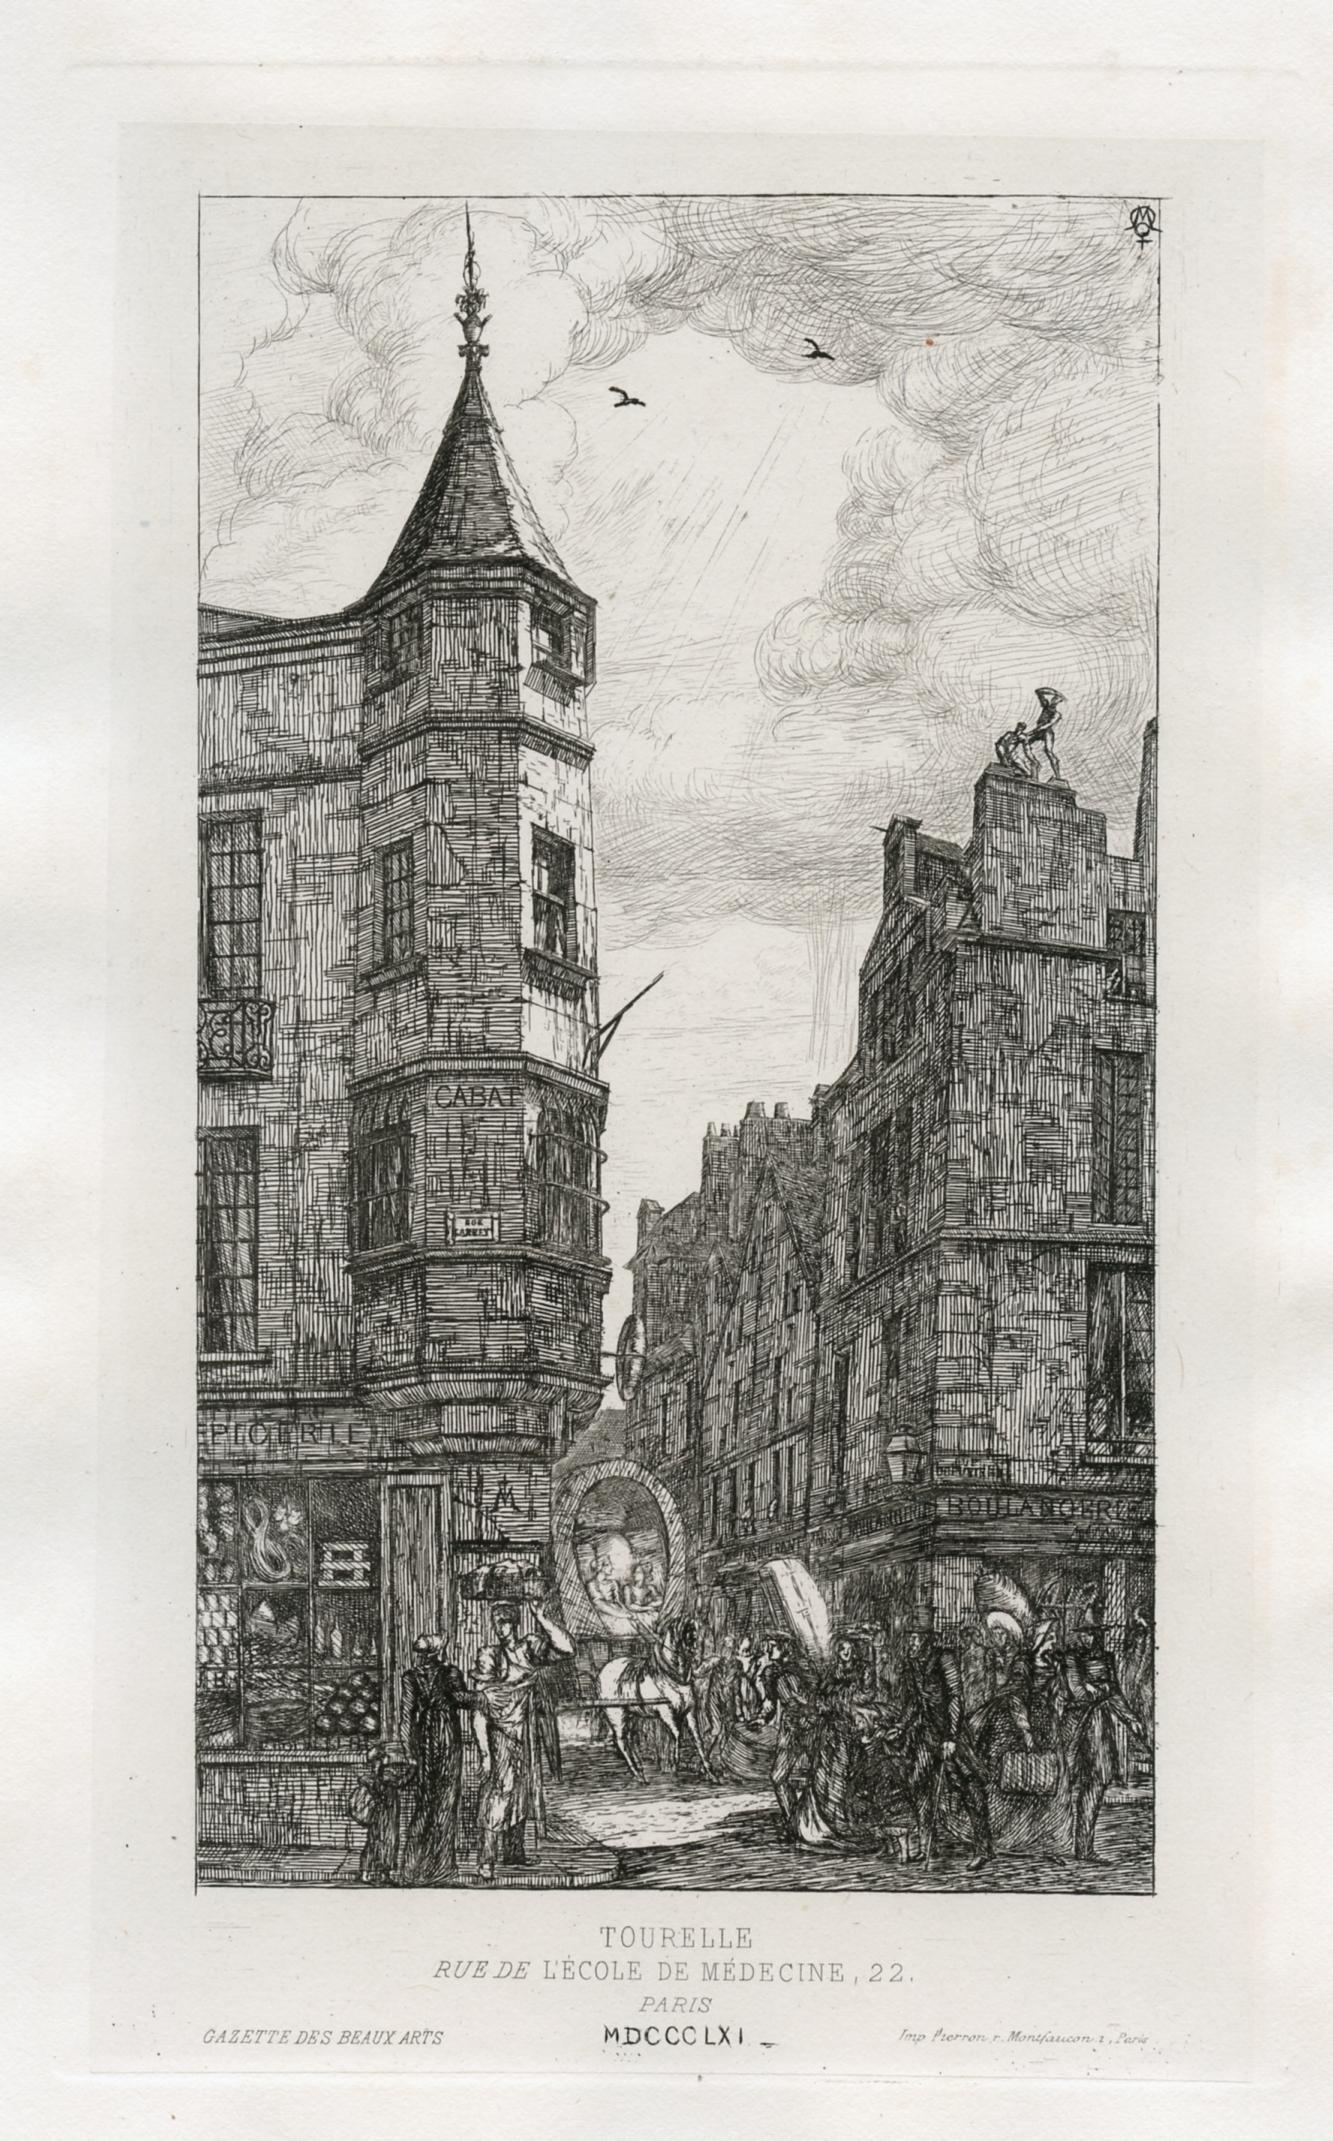 "Tourelle Rue de L'Ecole de Medicine 22" original etching - Print by Charles Meryon